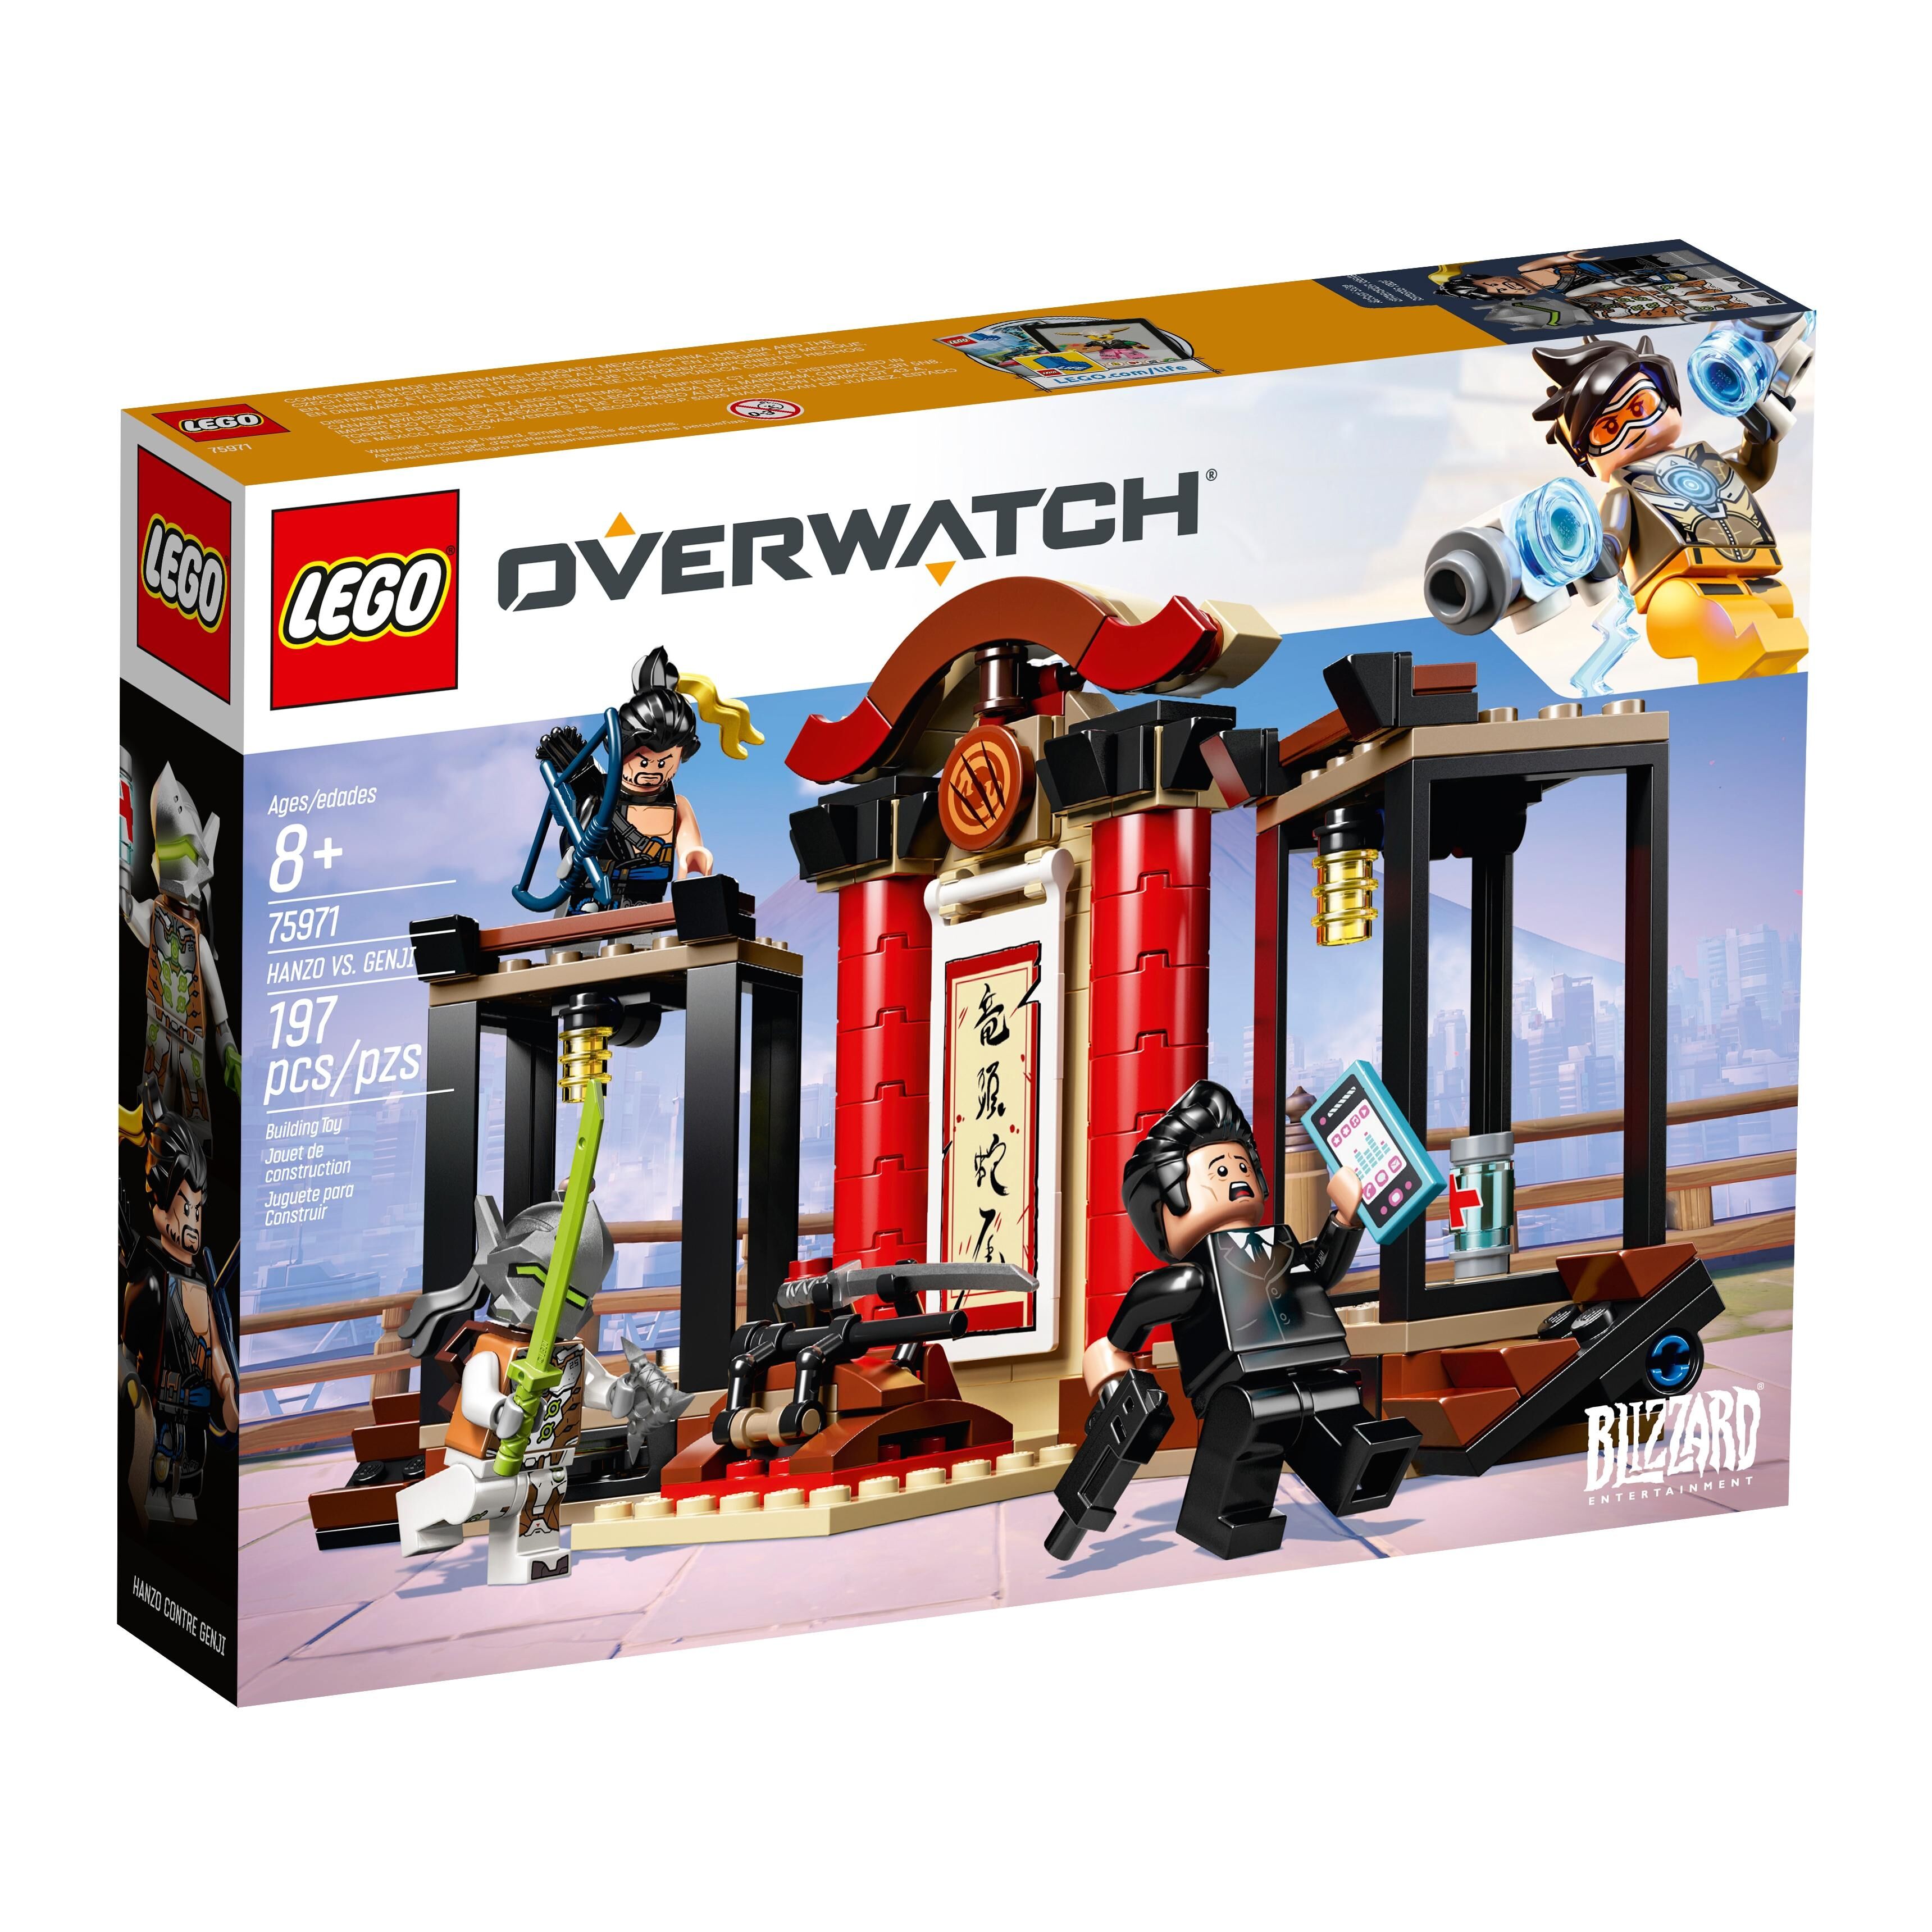 minifigs-Overwatch-ow004-GENJI LEGO ® 75971 